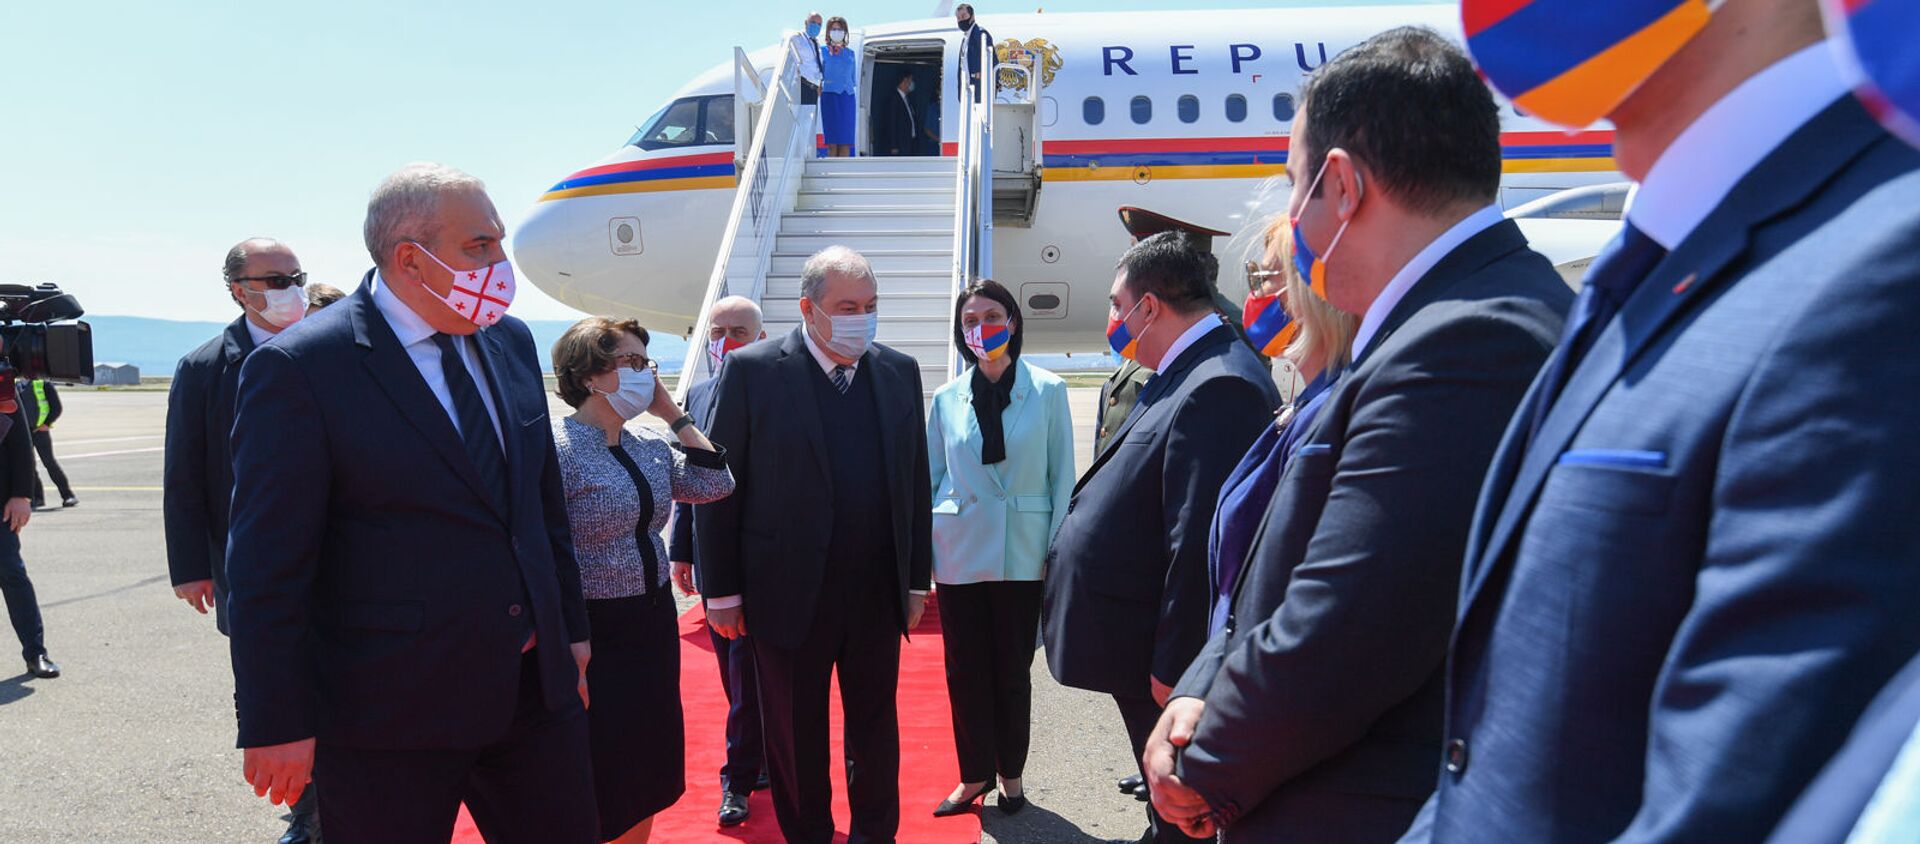 Президент Армении Армен Саркисян вместе с супругой Нуне Саркисян с официальным визитом прибыл в Грузию (15 апреля 2021). Тбилиси - Sputnik Արմենիա, 1920, 15.04.2021